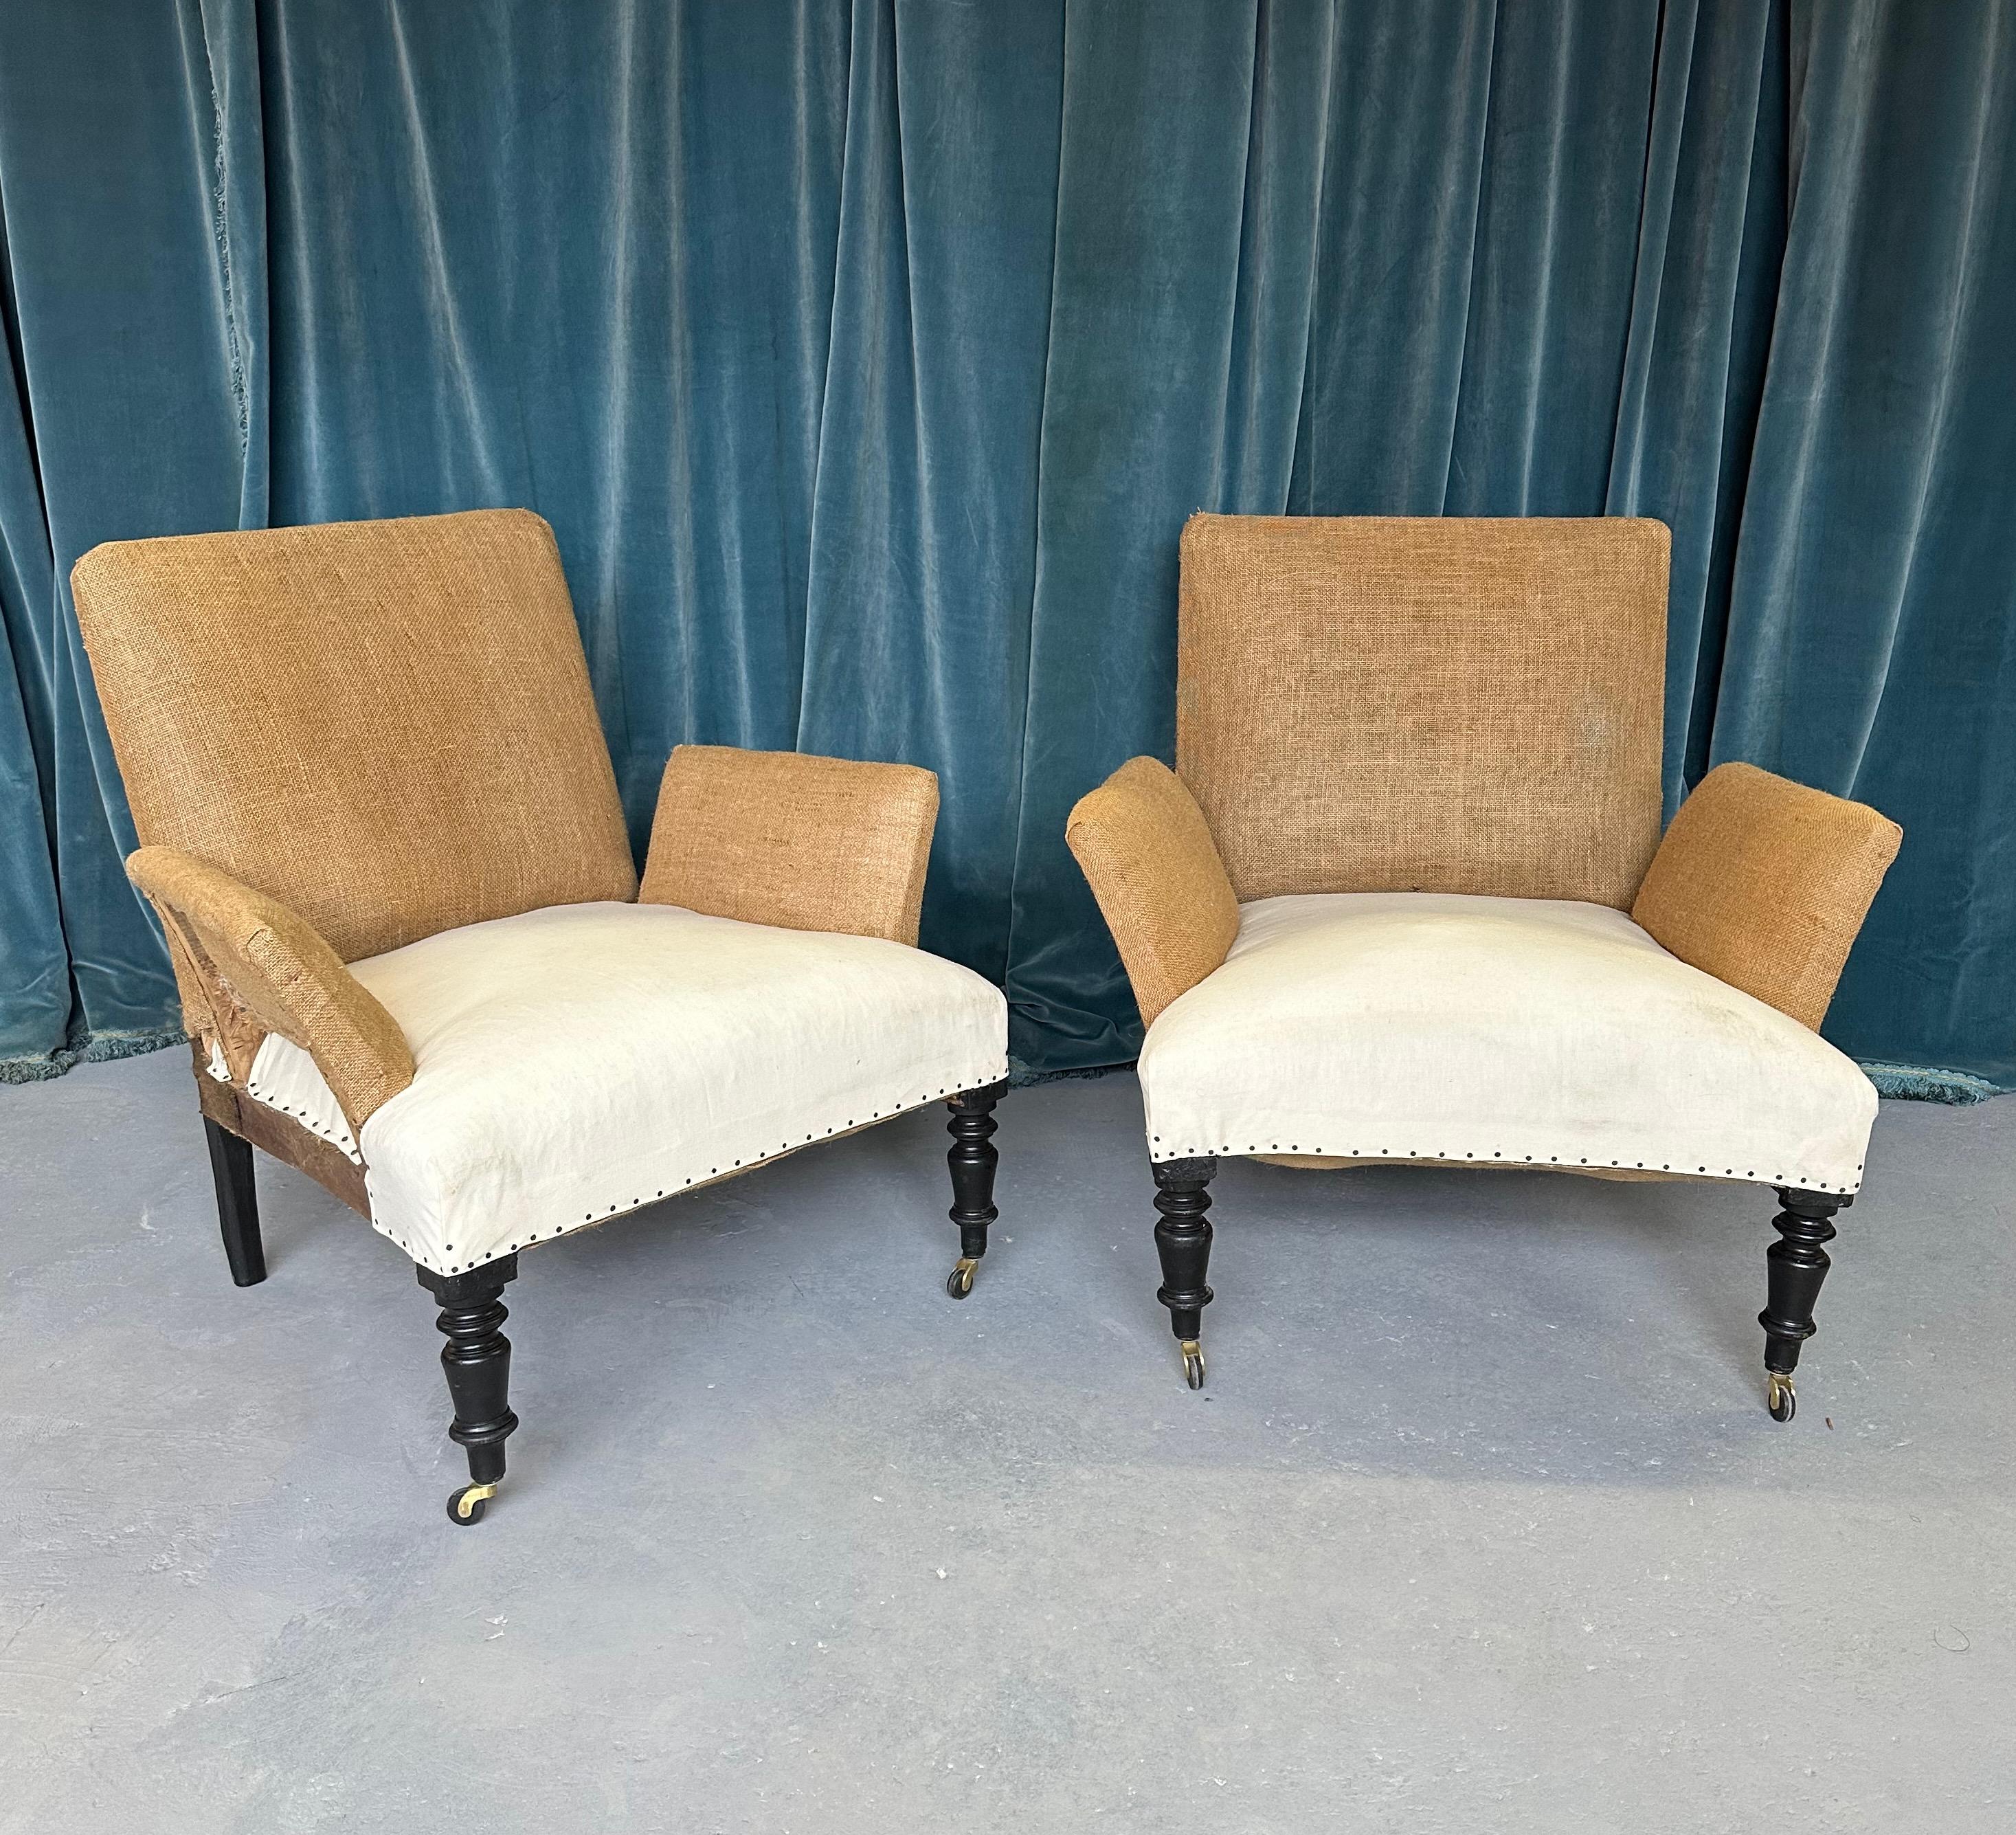 Une paire intéressante de fauteuils français de la fin du 19ème siècle qui ont été déshabillés jusqu'à la toile de jute et la mousseline et qui sont prêts à être tapissés. Cette paire inhabituelle de fauteuils d'époque présente des dossiers